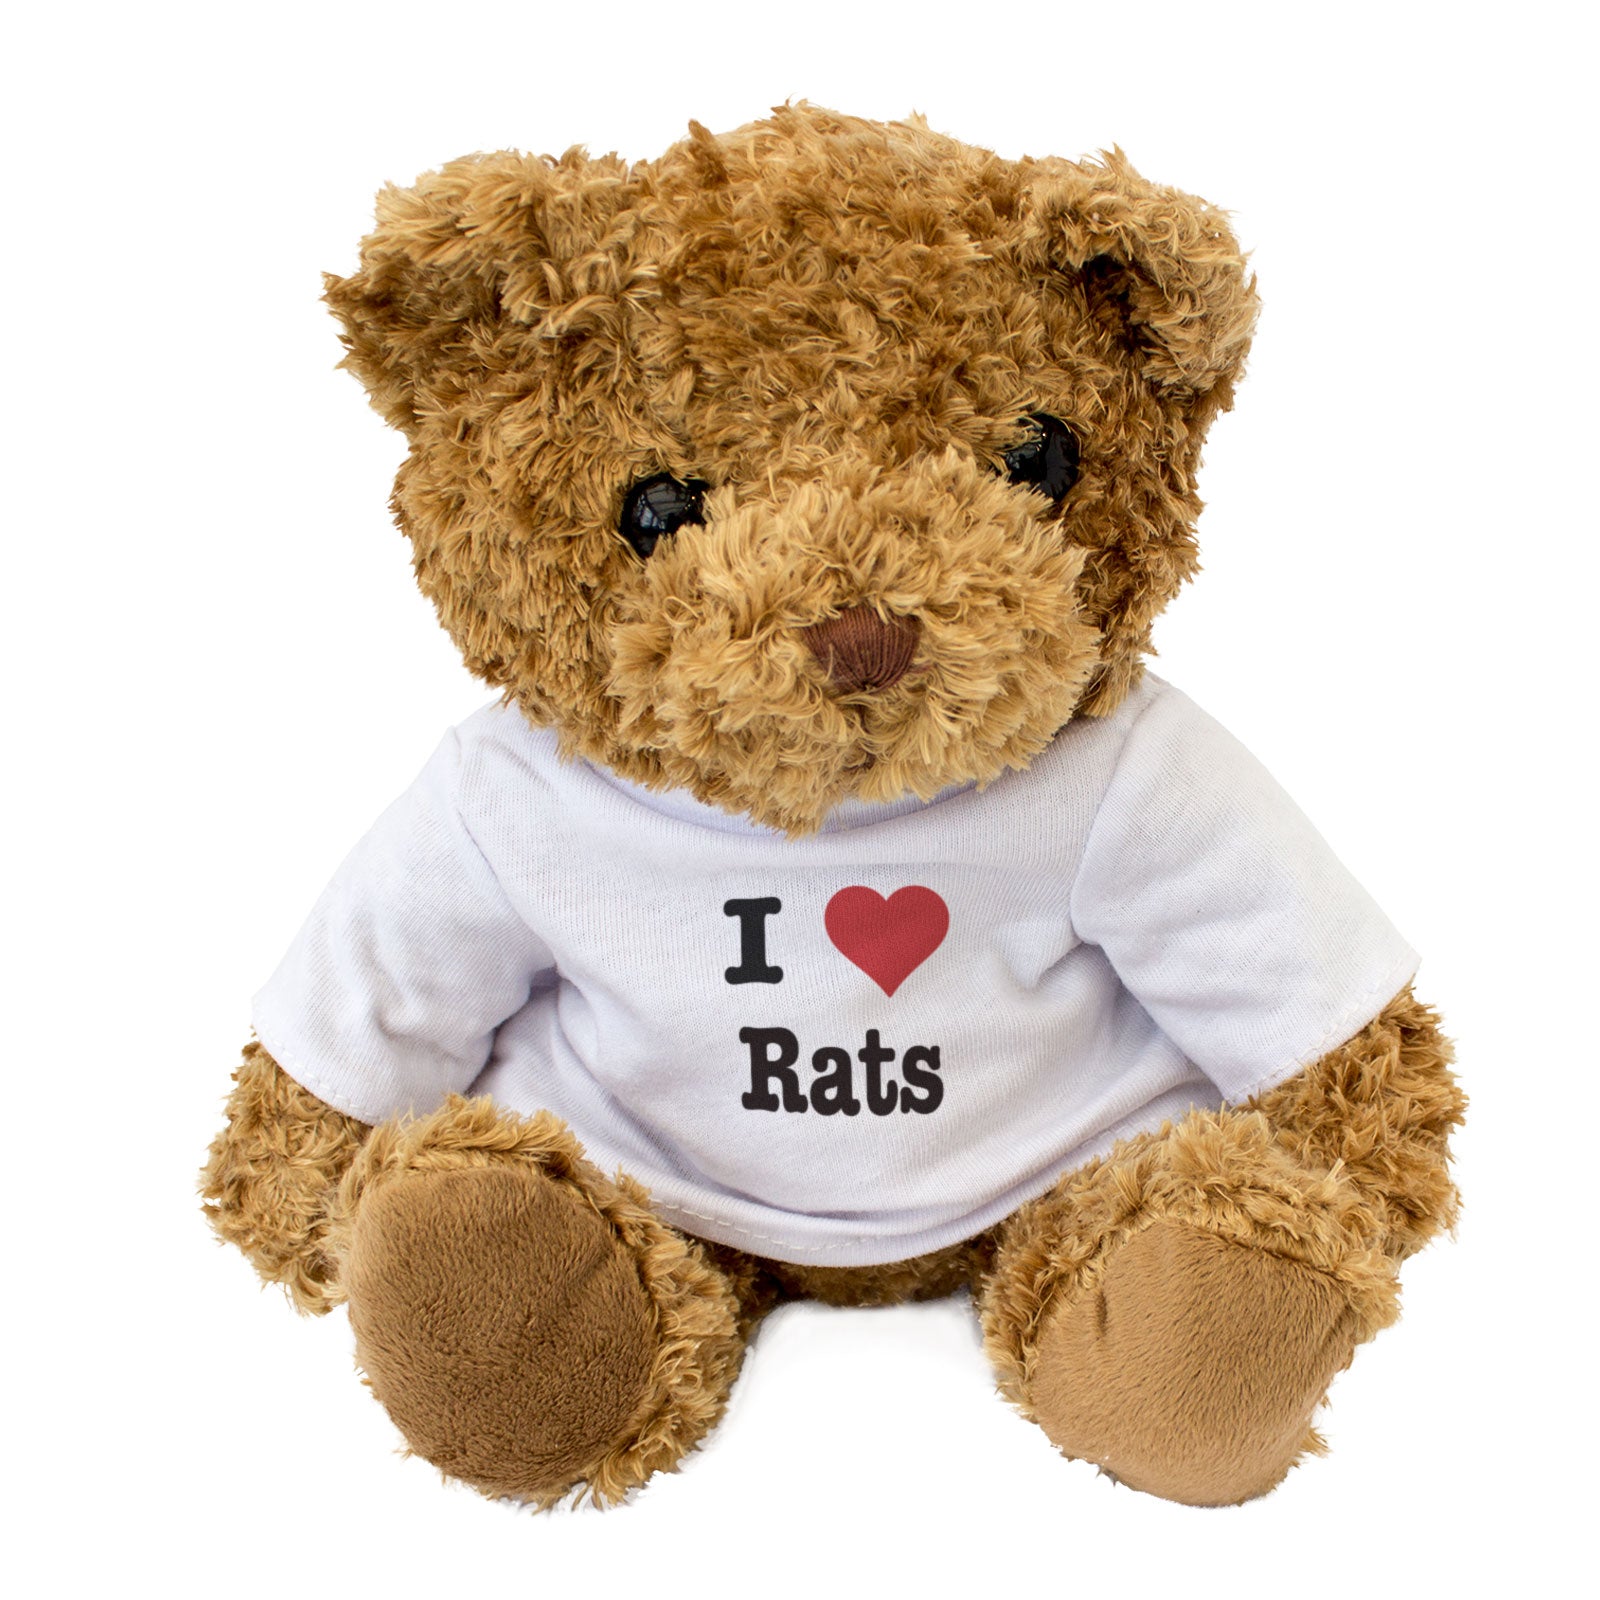 I Love Rats - Teddy Bear